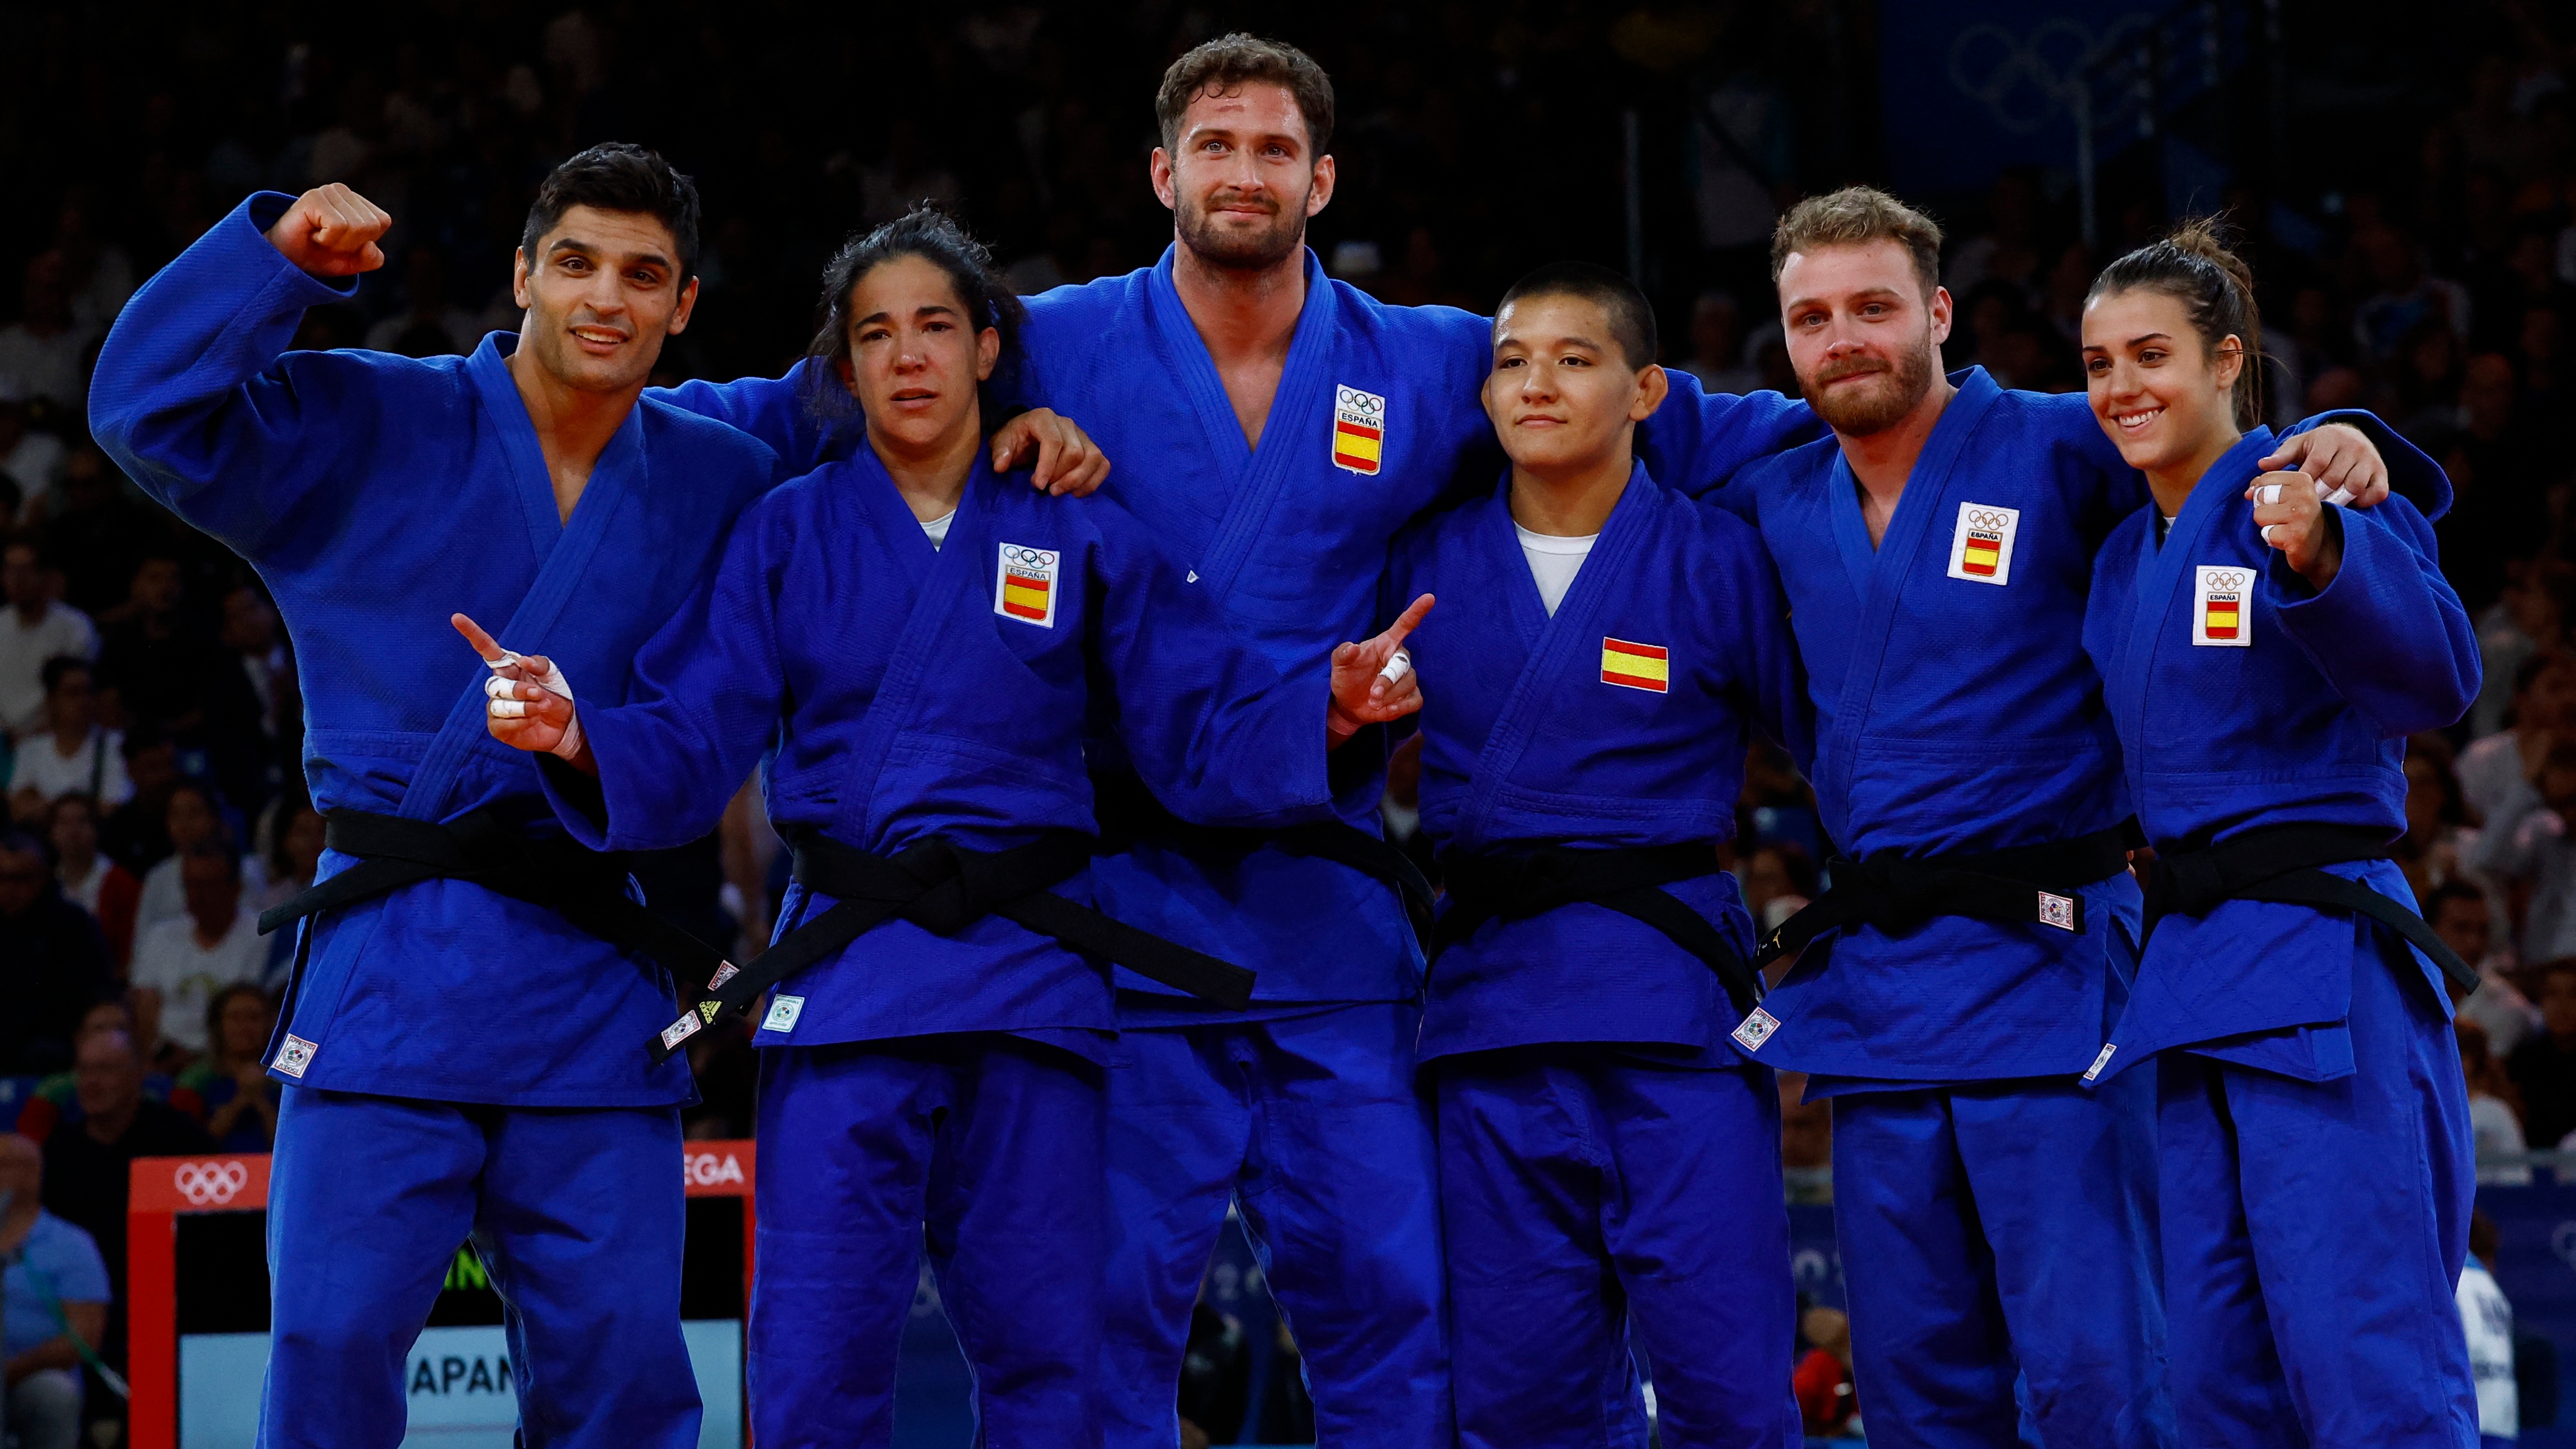 El equipo español de judo por equipos mixto durante los JJOO de París. 